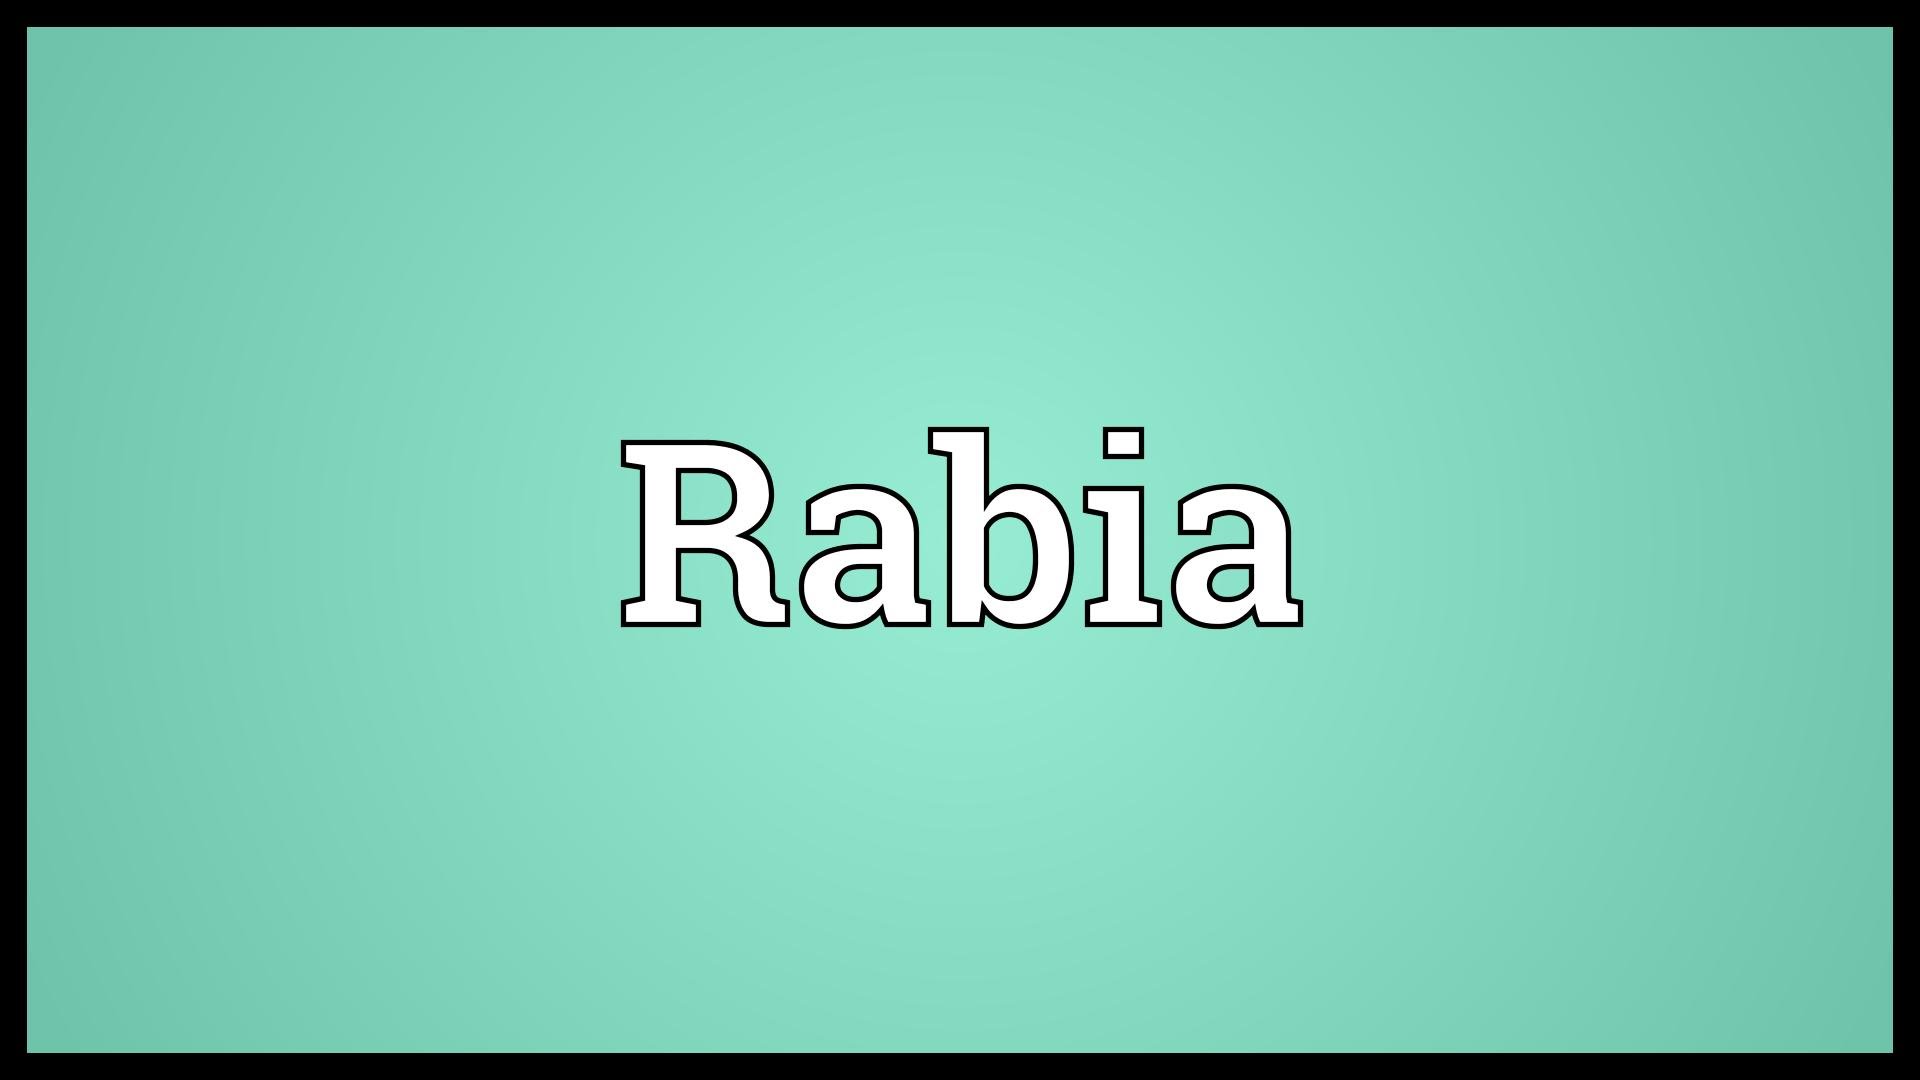 Rabia имя. Картинки с именем Рабия. Рабия имя обои. Май нейм из Рабия. Имя хаял